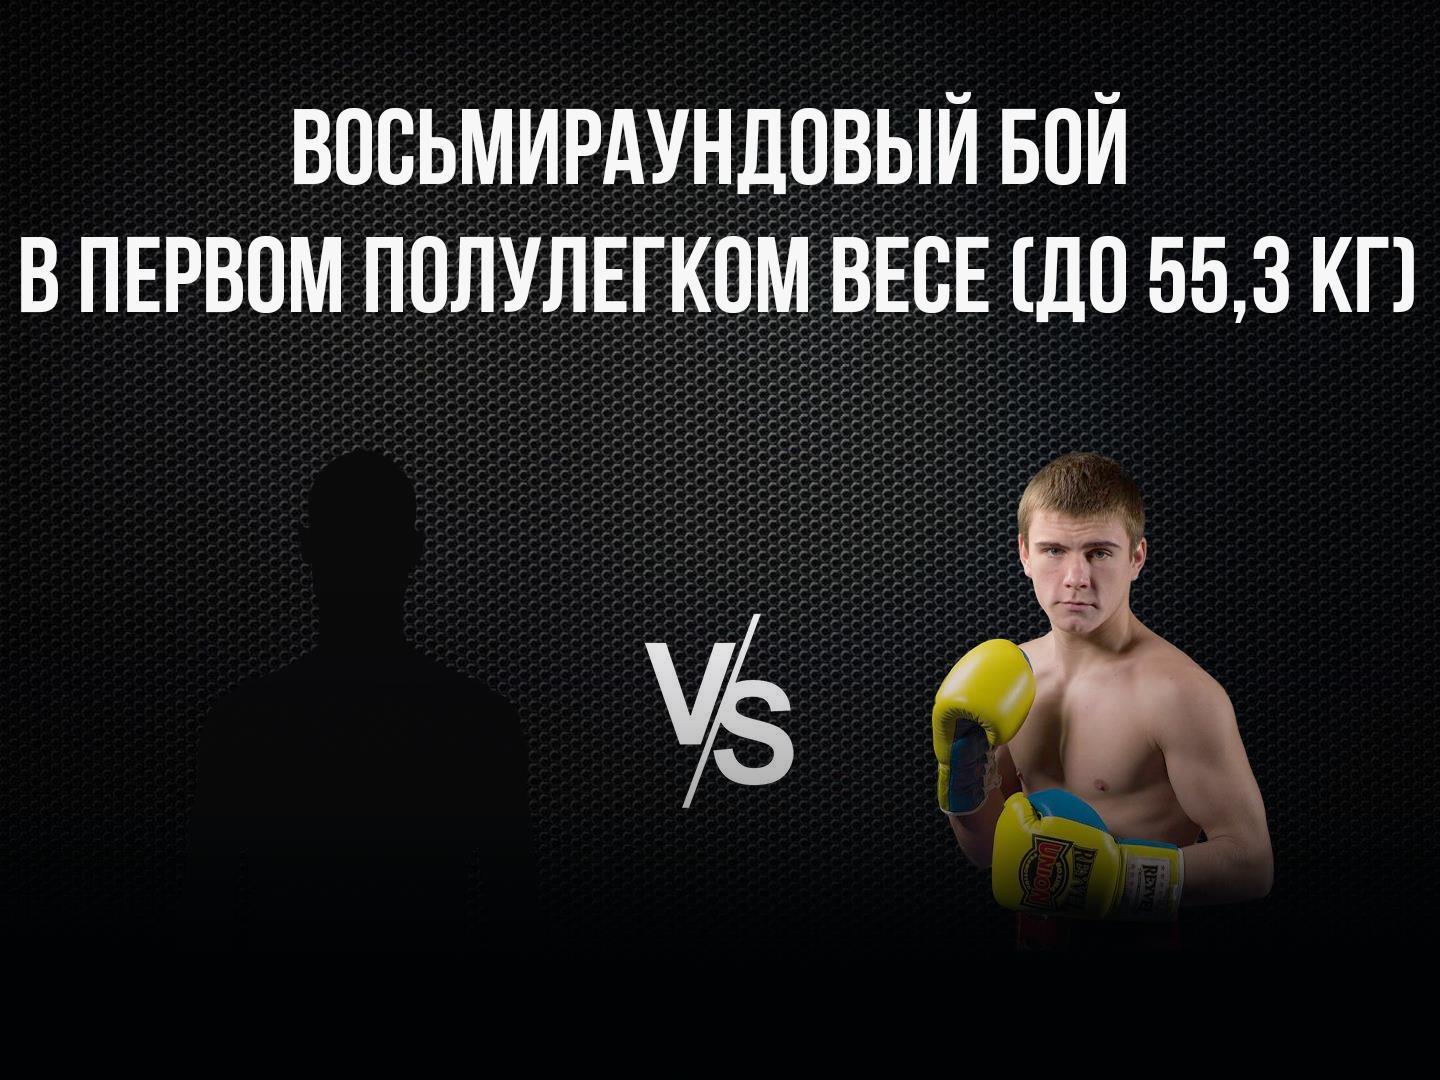 8-раундовый бой в первом полулегком весе (до 55,3 кг). Владимир Никитин (Россия) - Александр Егоров (Украина)